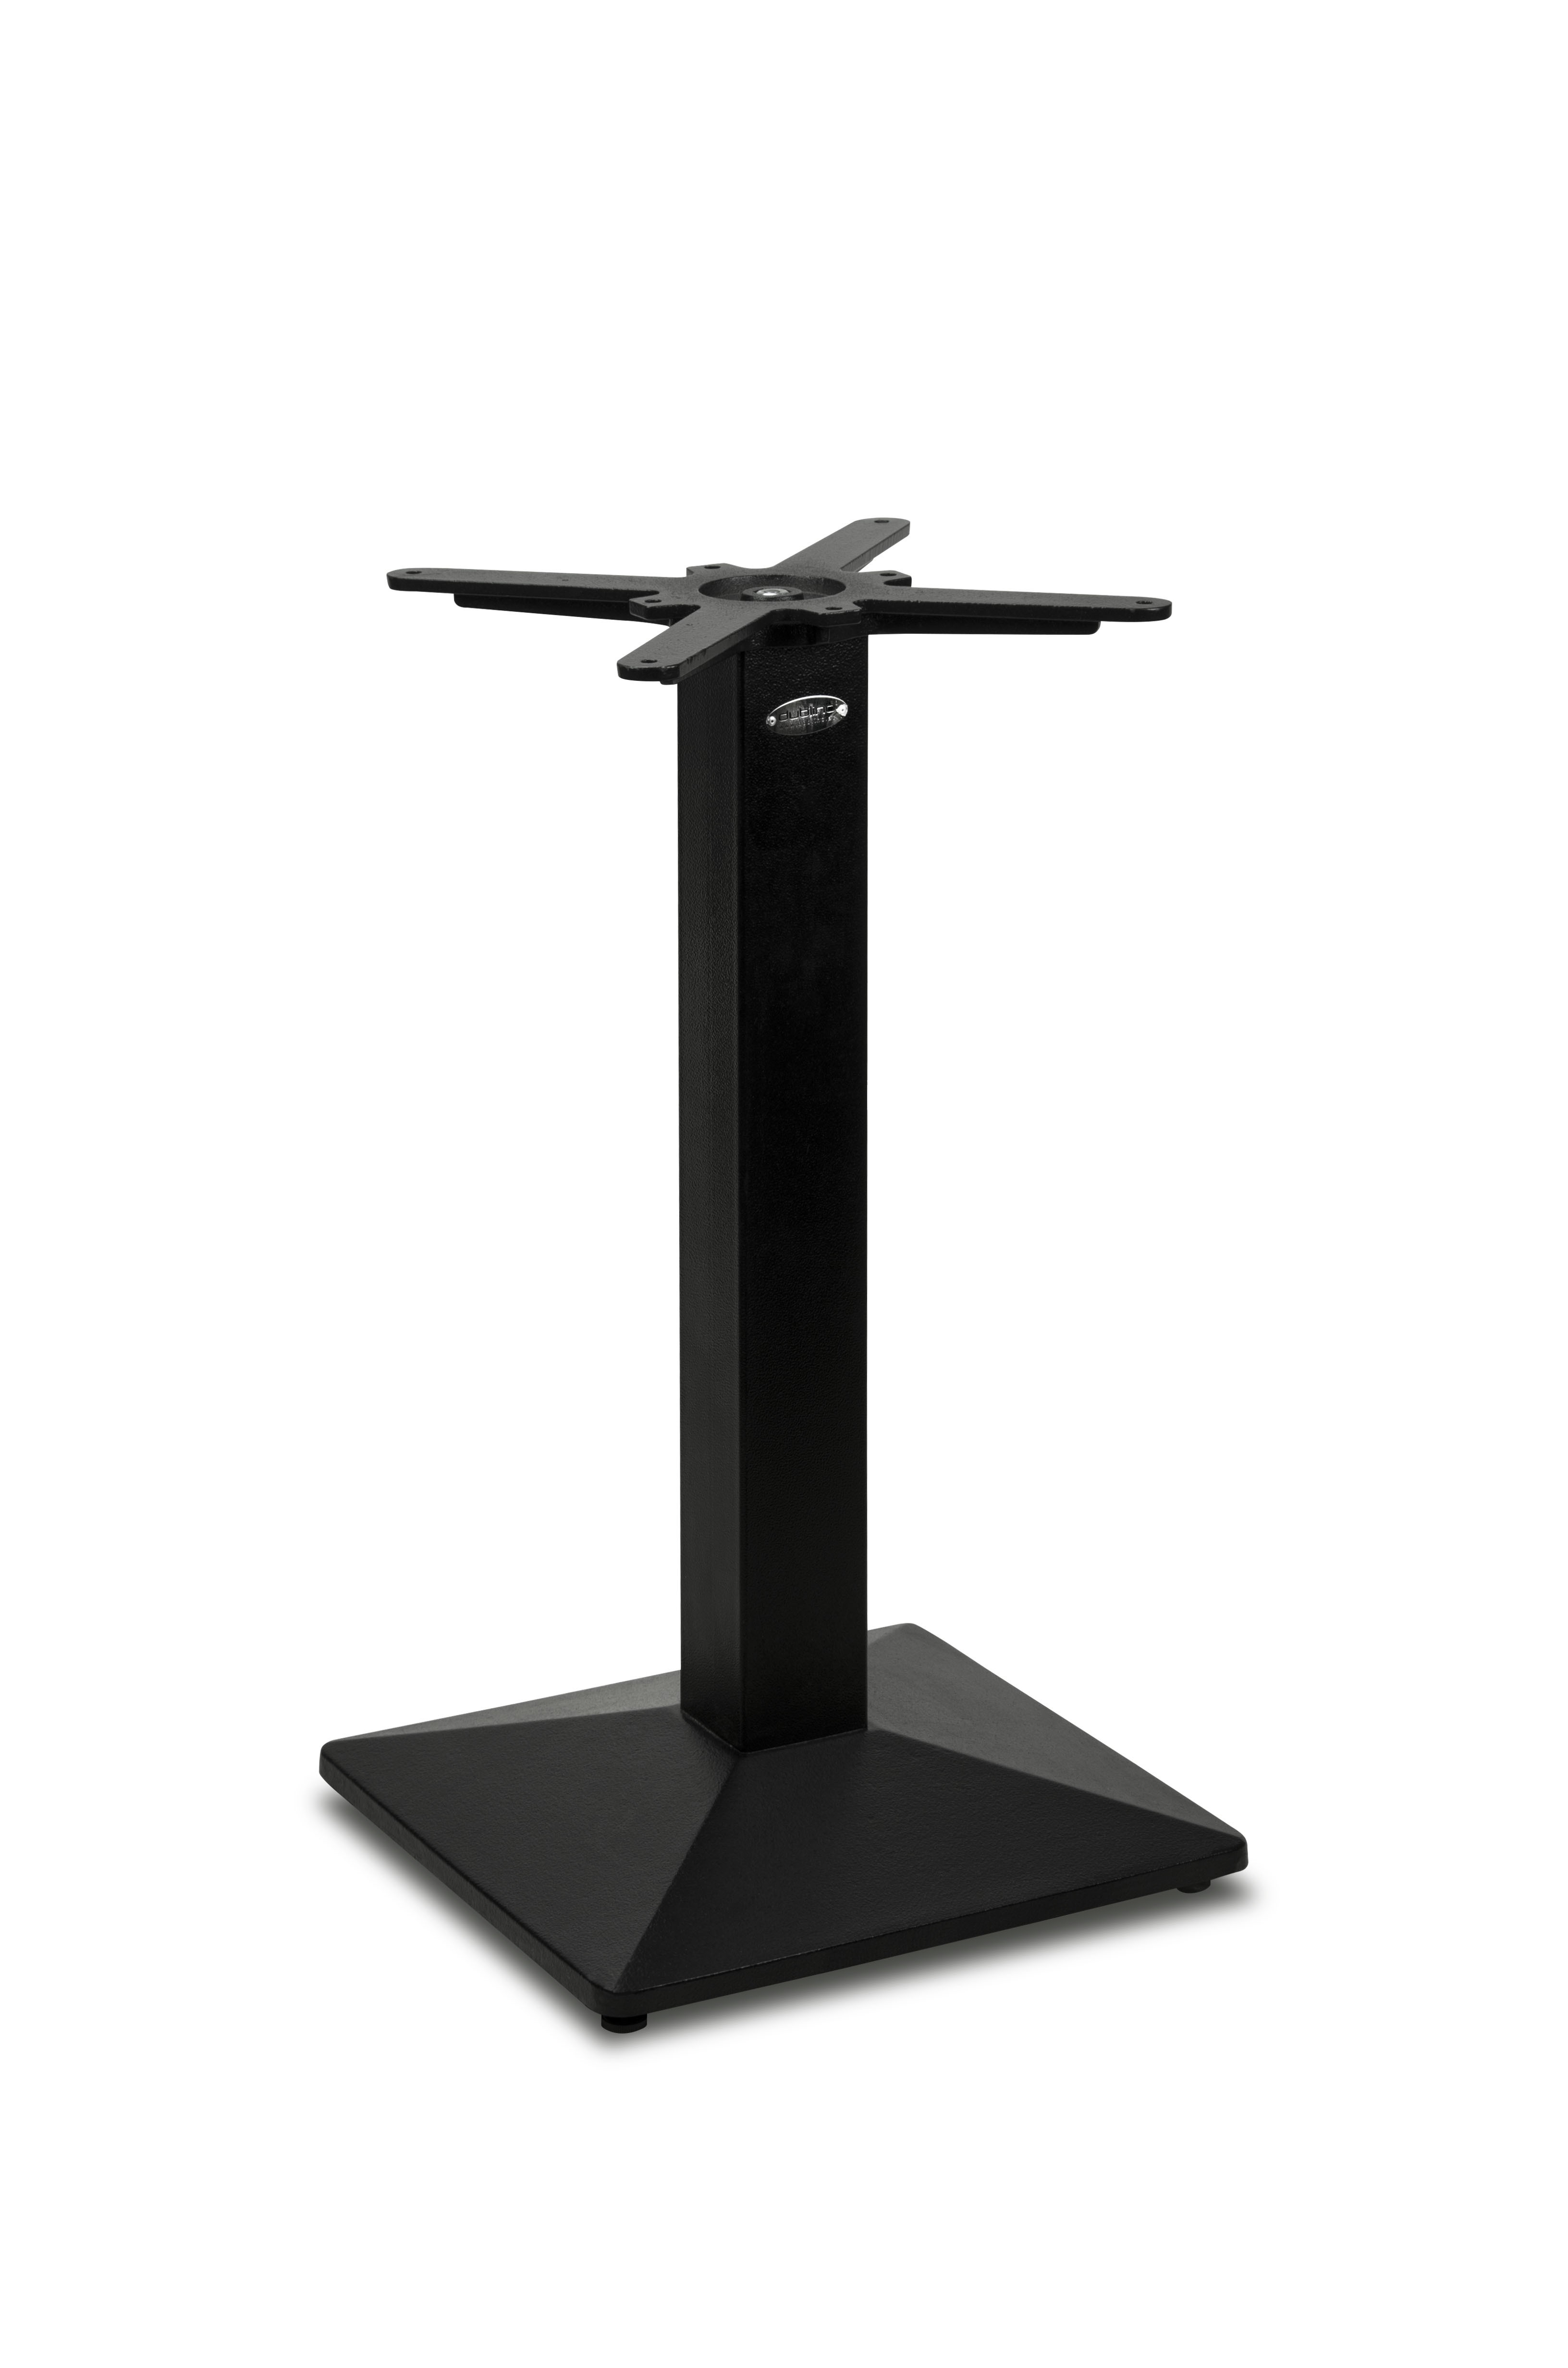 Gusseisen Premium Tischgestell PJ7007 (Tischbein), pulverbeschichtet schwarz, quadratisch